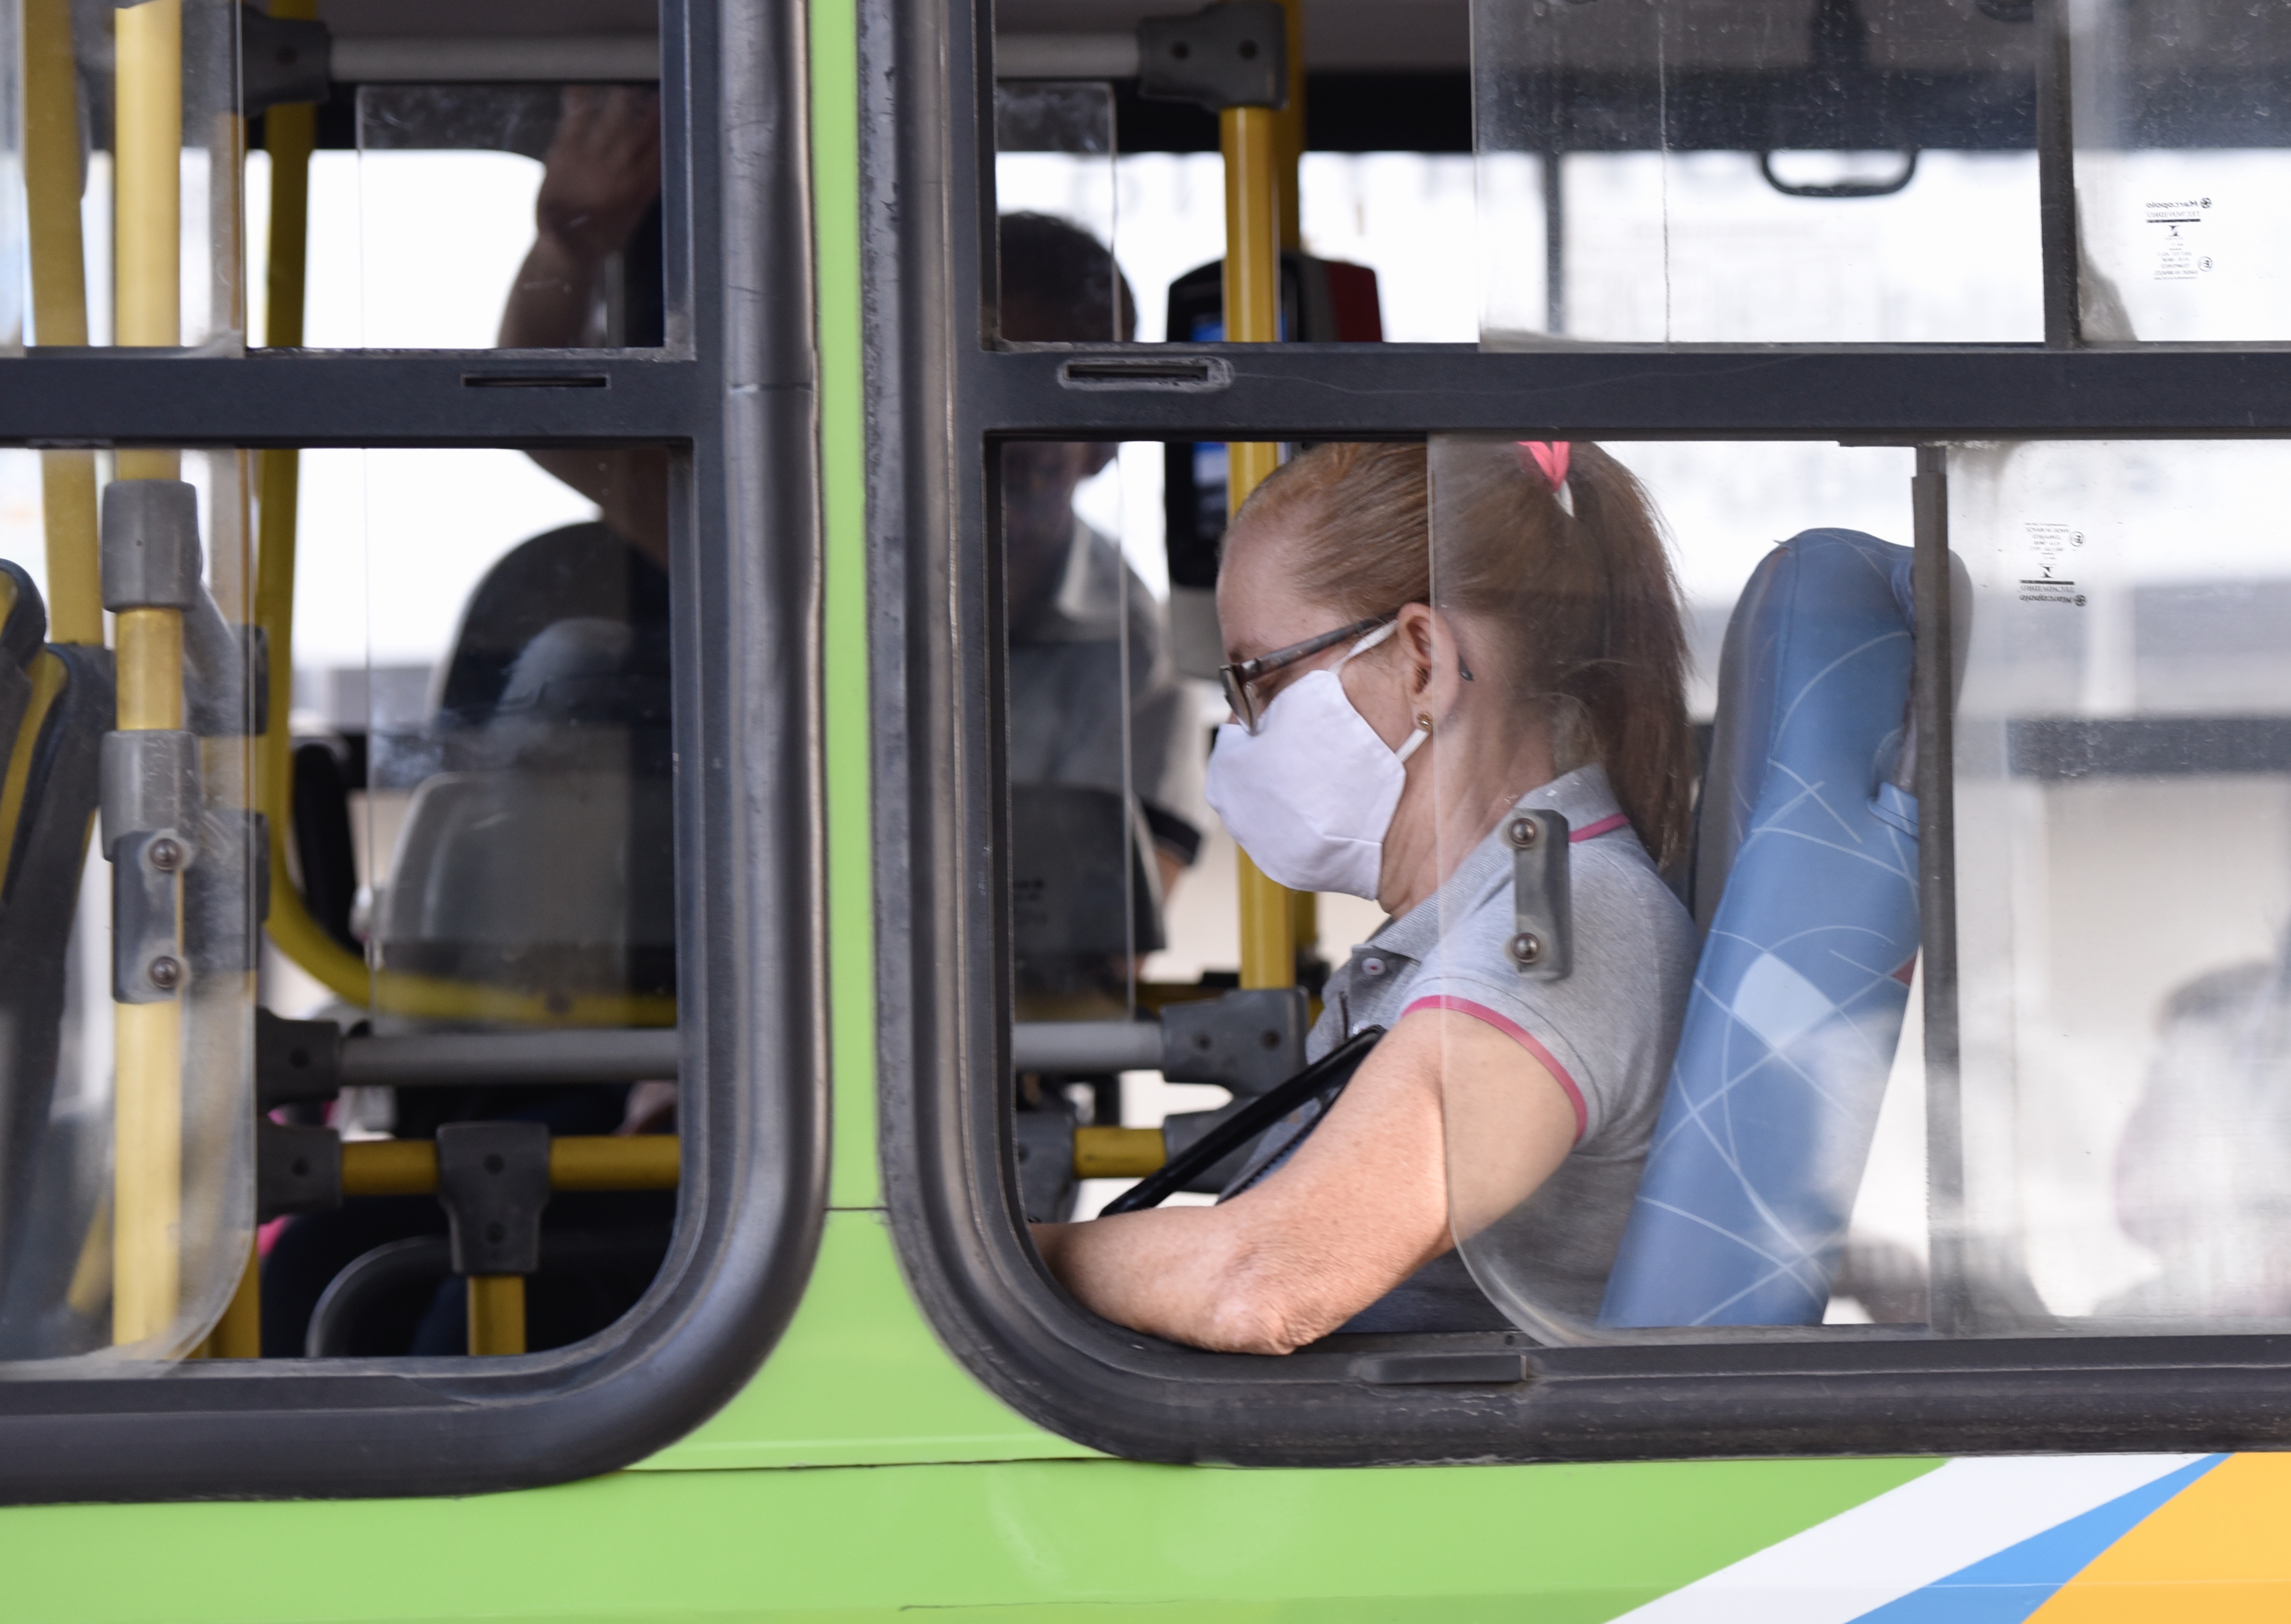 Muitos usuários do Transcol estão usando a máscara de proteção contra o coronavírus. Mas ainda é possível ver alguns em ela ´